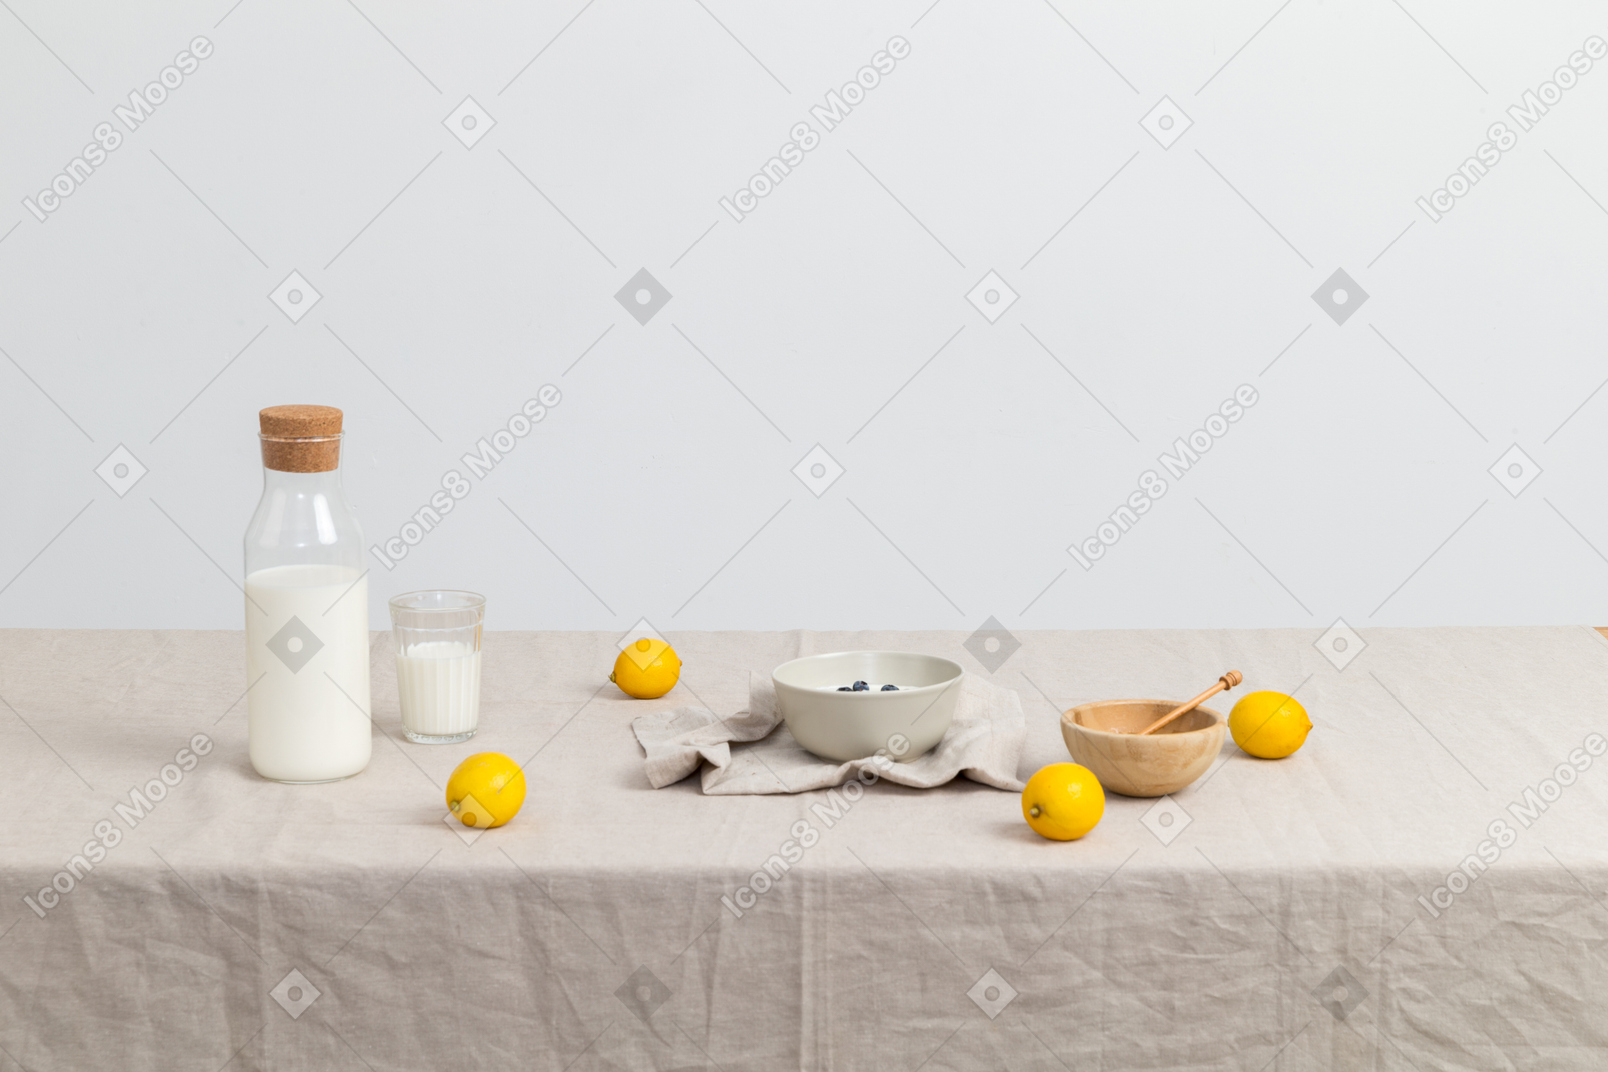 Bottle of milk, glass of milk, bowls and lemons